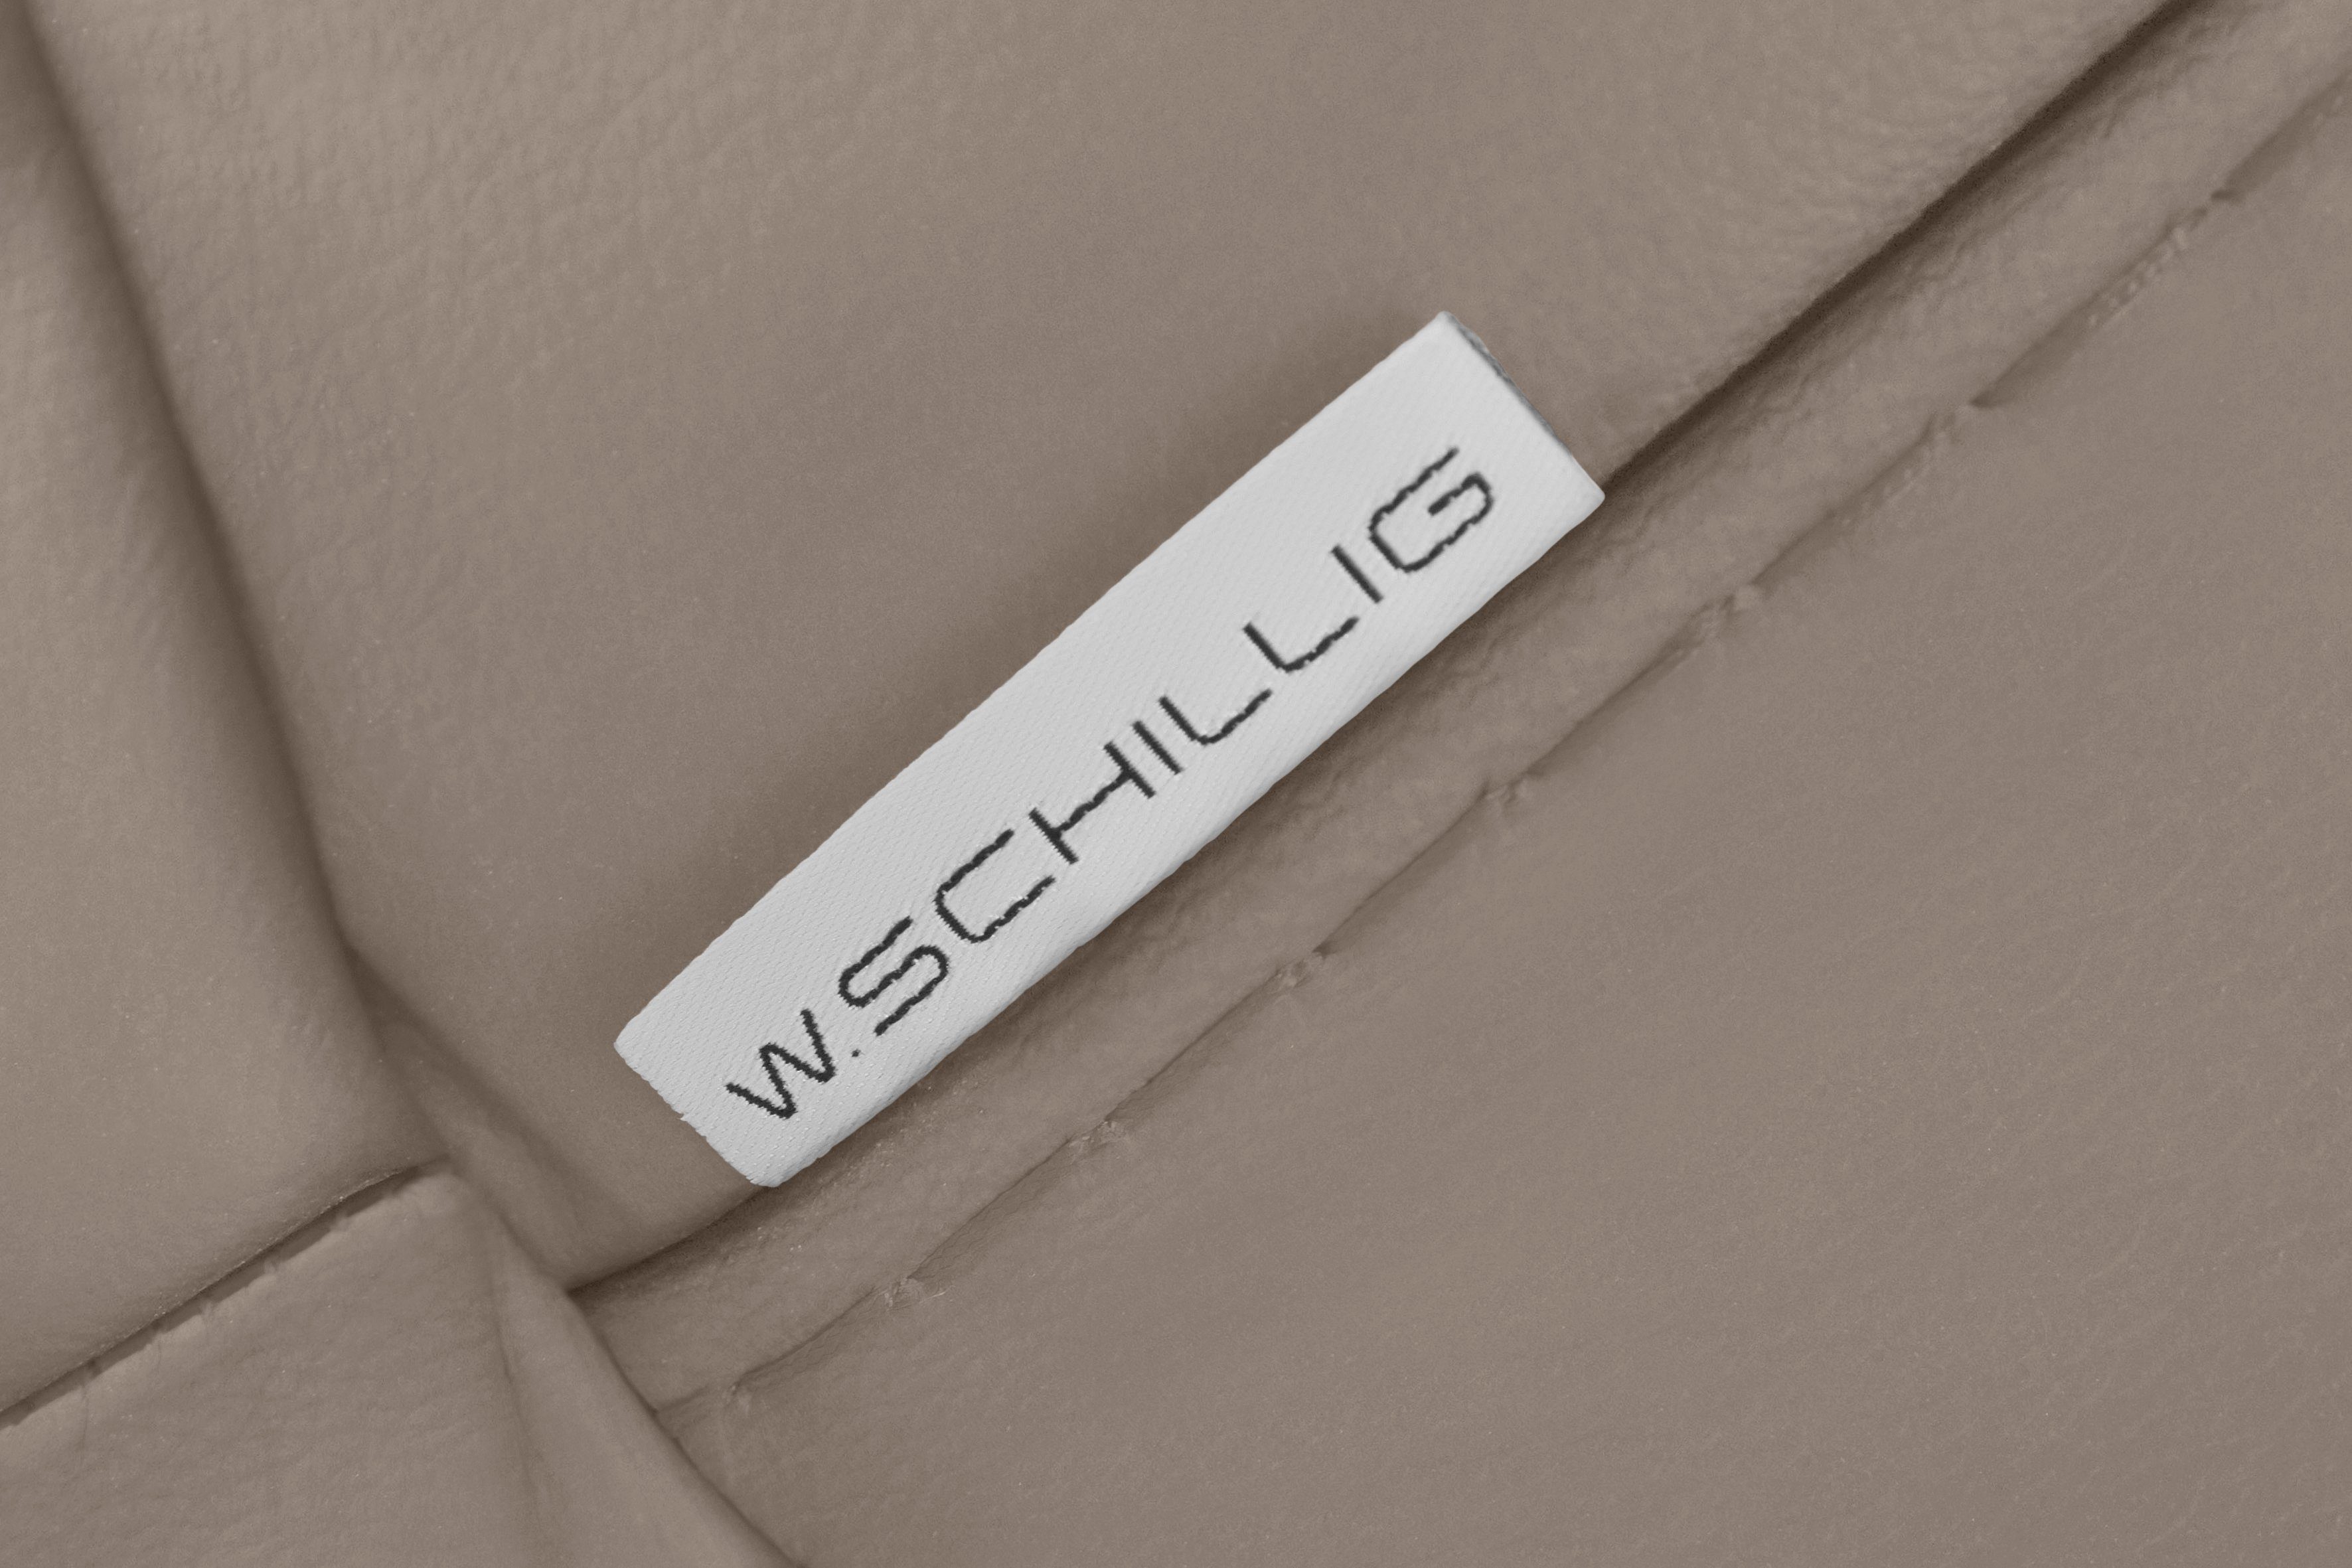 Breite in mit montanaa, 2,5-Sitzer glänzend, Chrom 232 cm Metallfüßen W.SCHILLIG